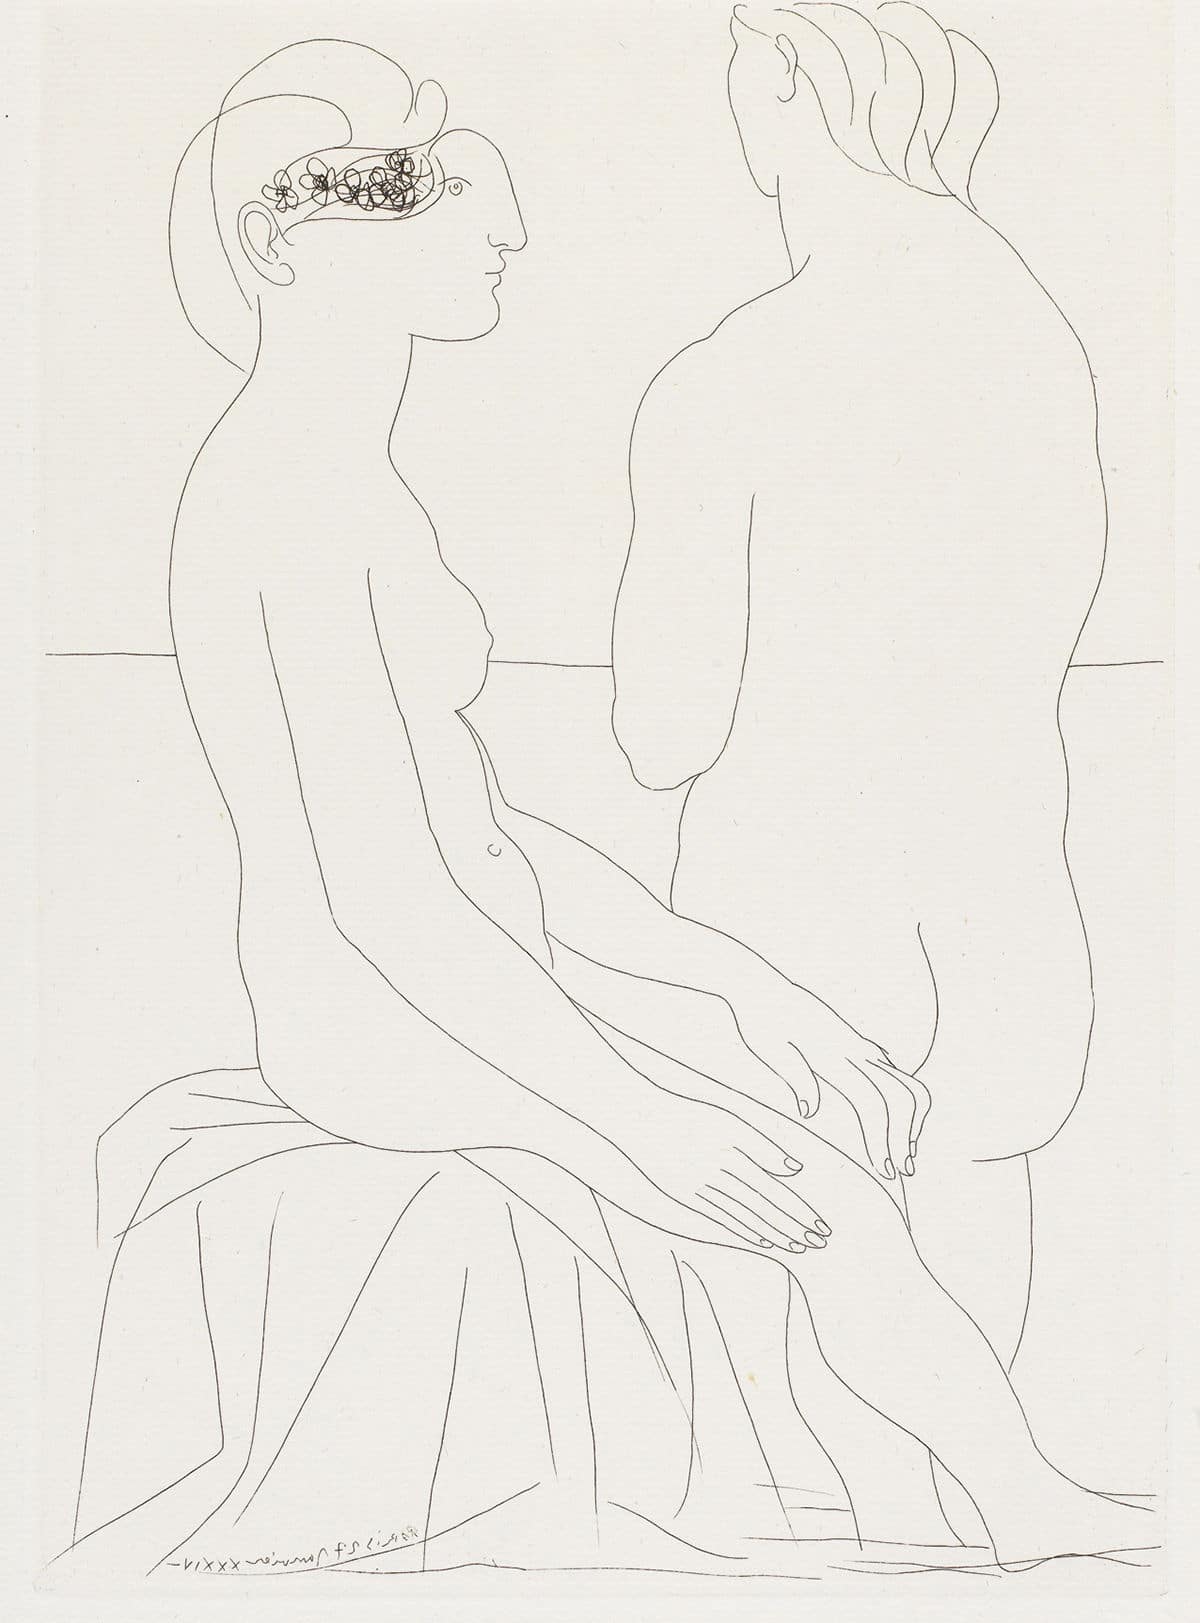 Mujer sentada y mujer de espaldas © Pablo Picasso: Sucesión Pablo Picasso / VEGAP, Madrid © COLECCIONES Fundación MAPFRE